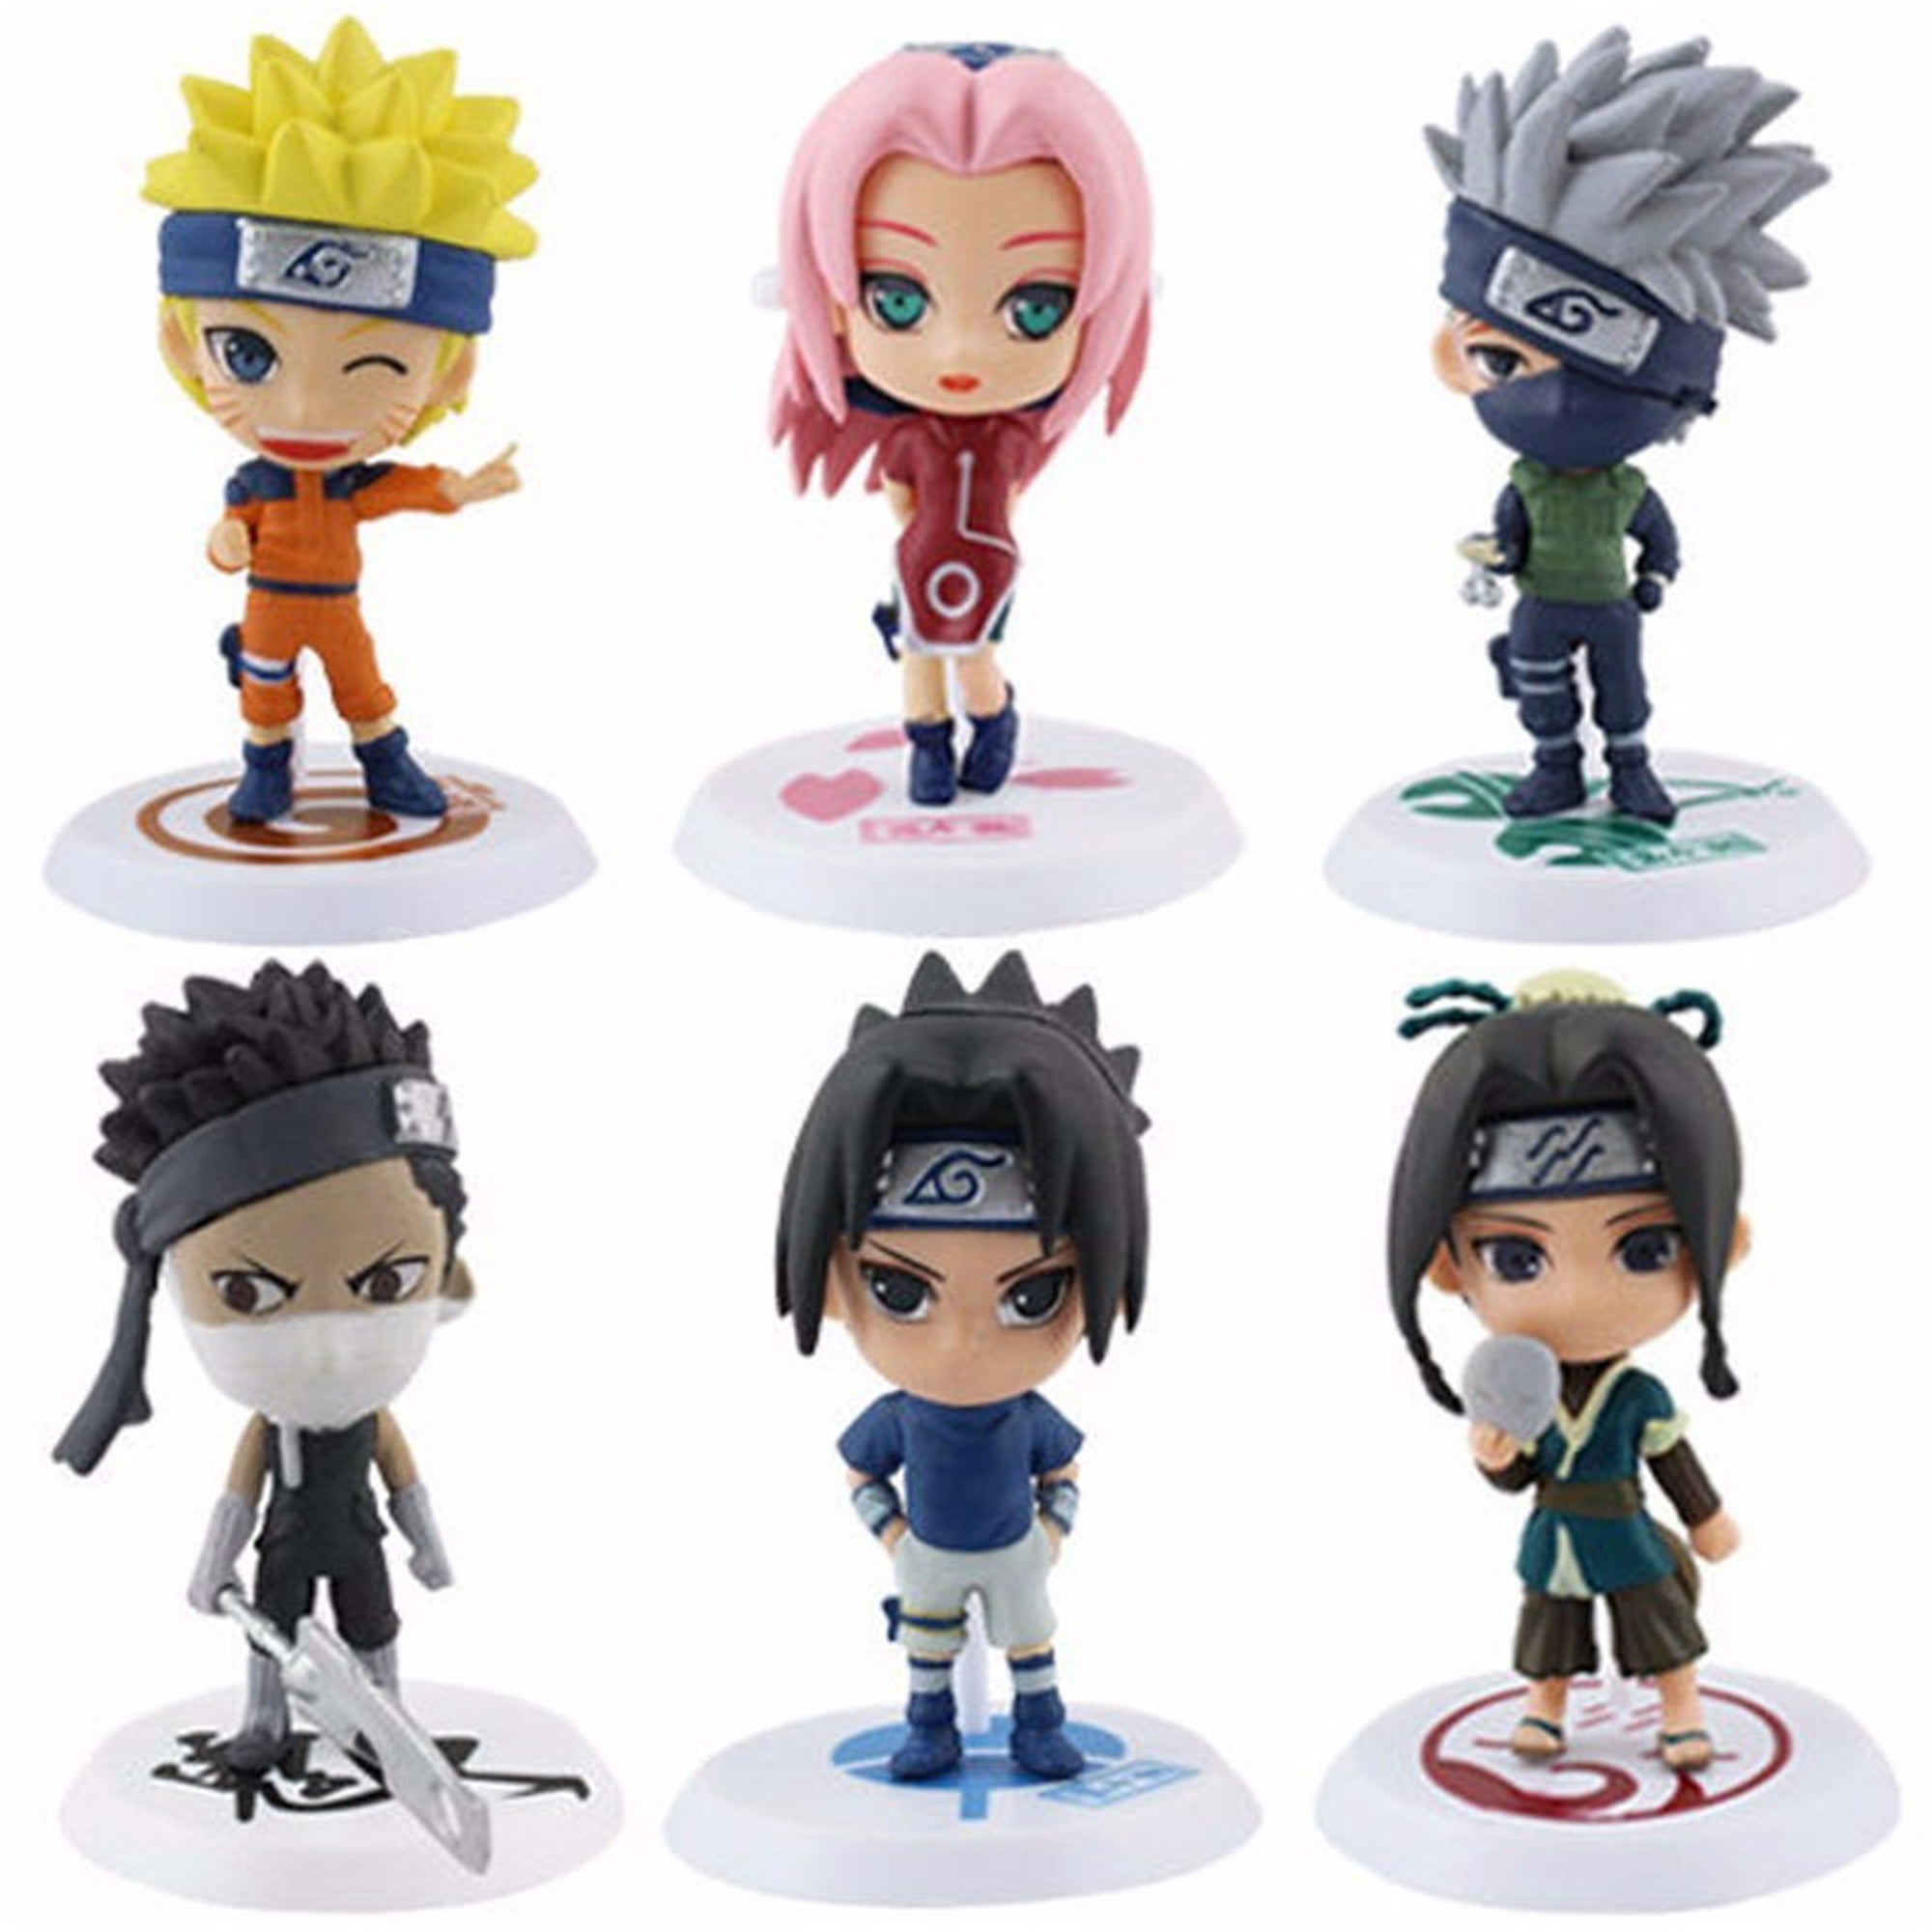 Details about   6pcs Naruto Action Figures Kakashi Sakura Sasuke Itachi PVC Toys Model Figurine